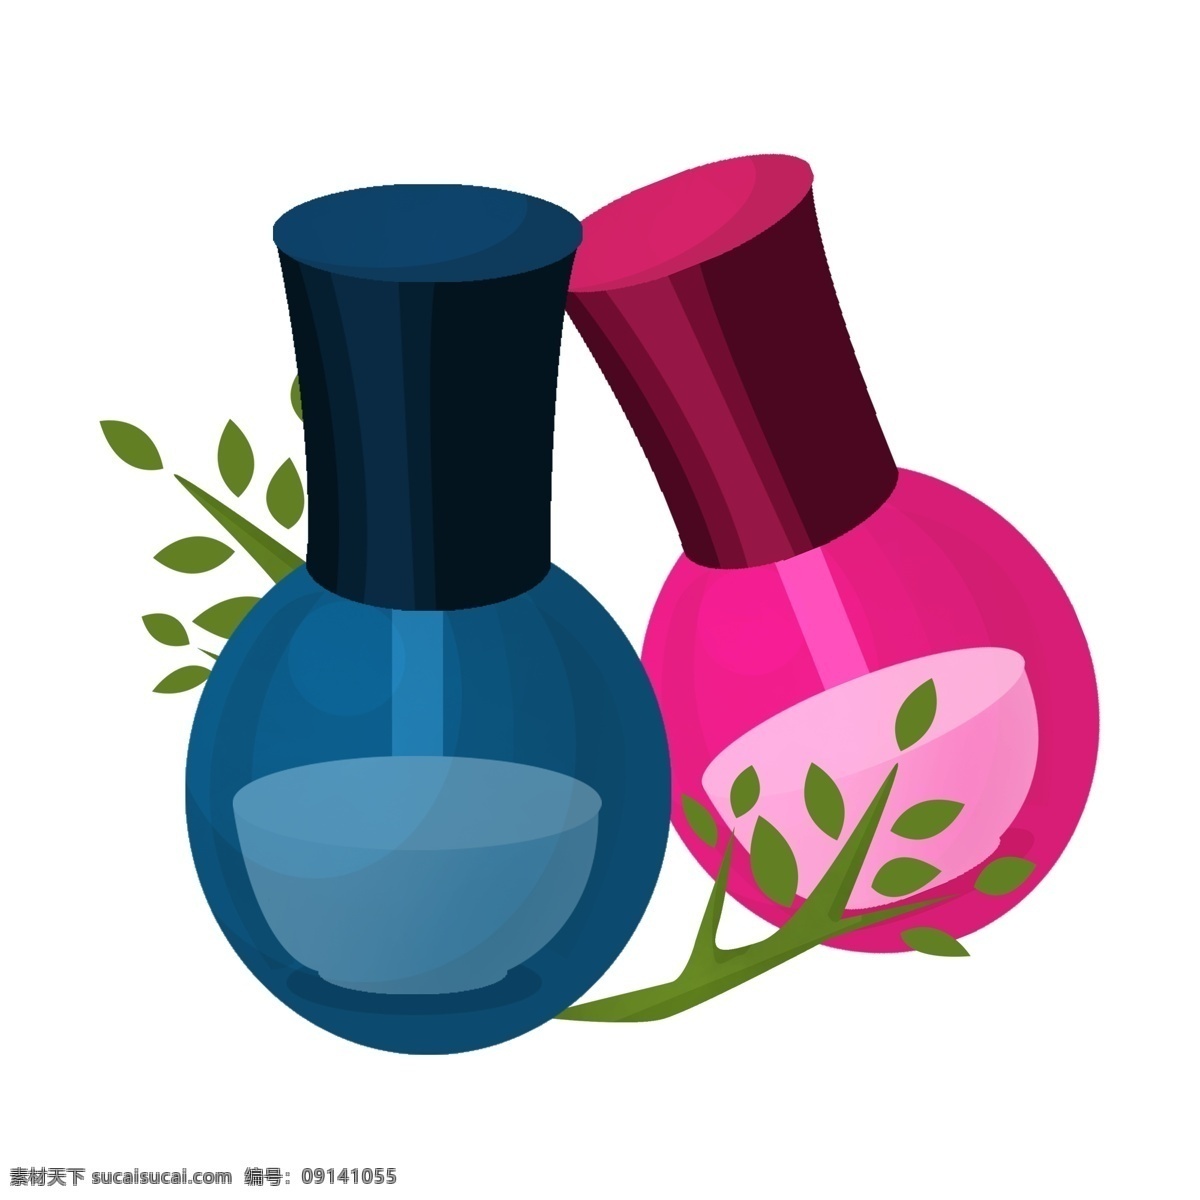 植物 美甲 指甲油 插画 女性 时尚 彩妆 化妆品 植物指甲油 漂亮的甲油 彩色指甲油 美甲指甲油